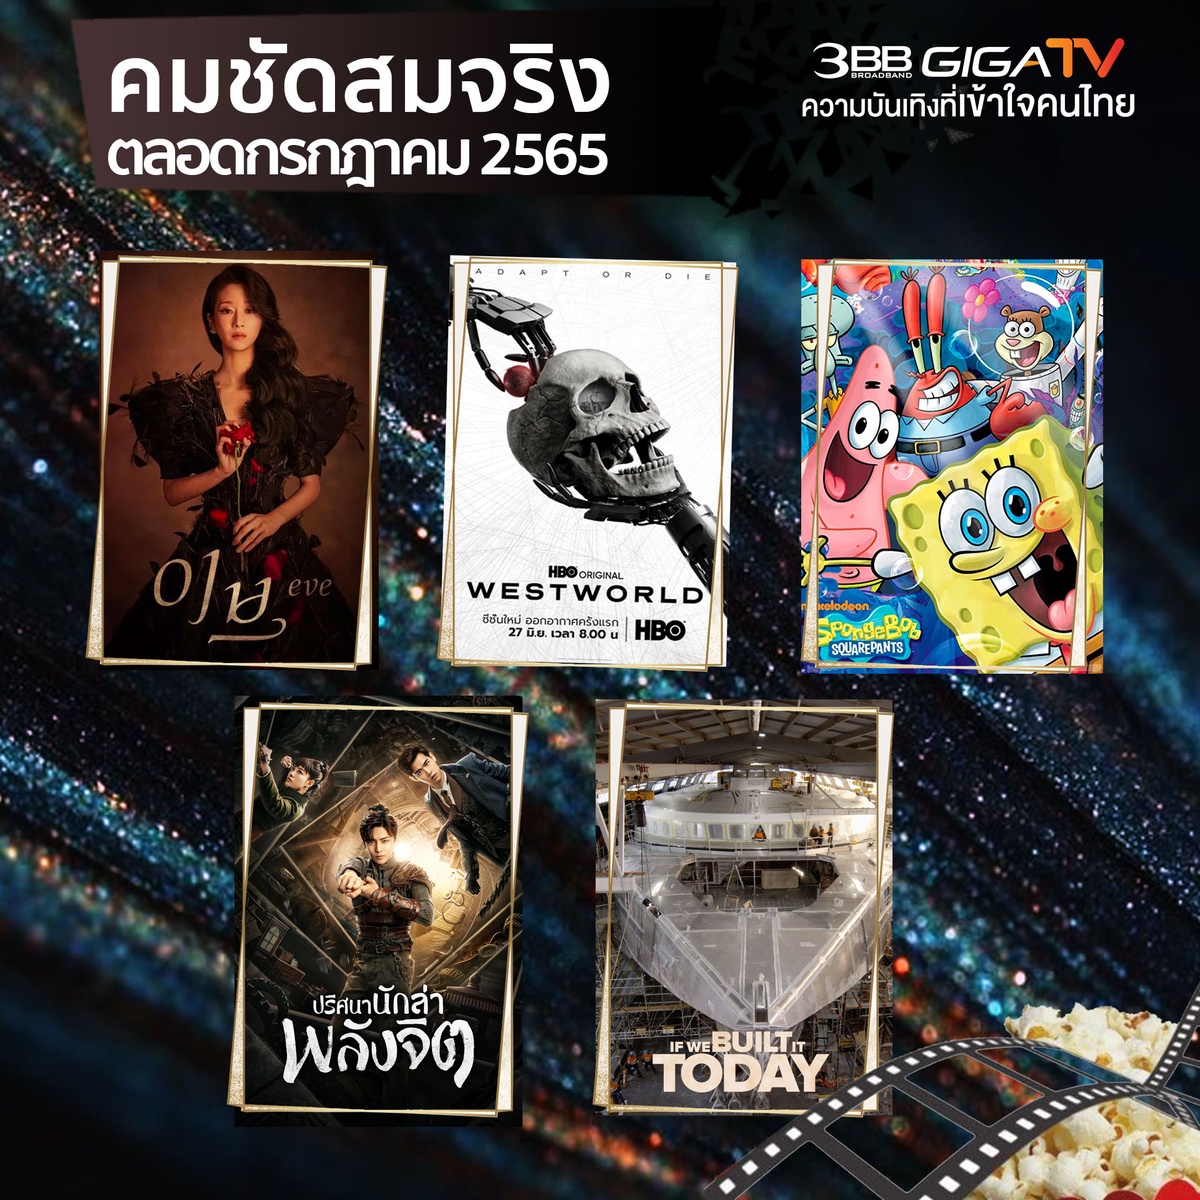 3BB GIGATV เสิร์ฟหนัง-ซีรีส์-สารคดี ระดับโลก รับชมคมชัดสมจริงทุกภูมิภาคทั่วไทยตลอดเดือนกรกฎาคมนี้